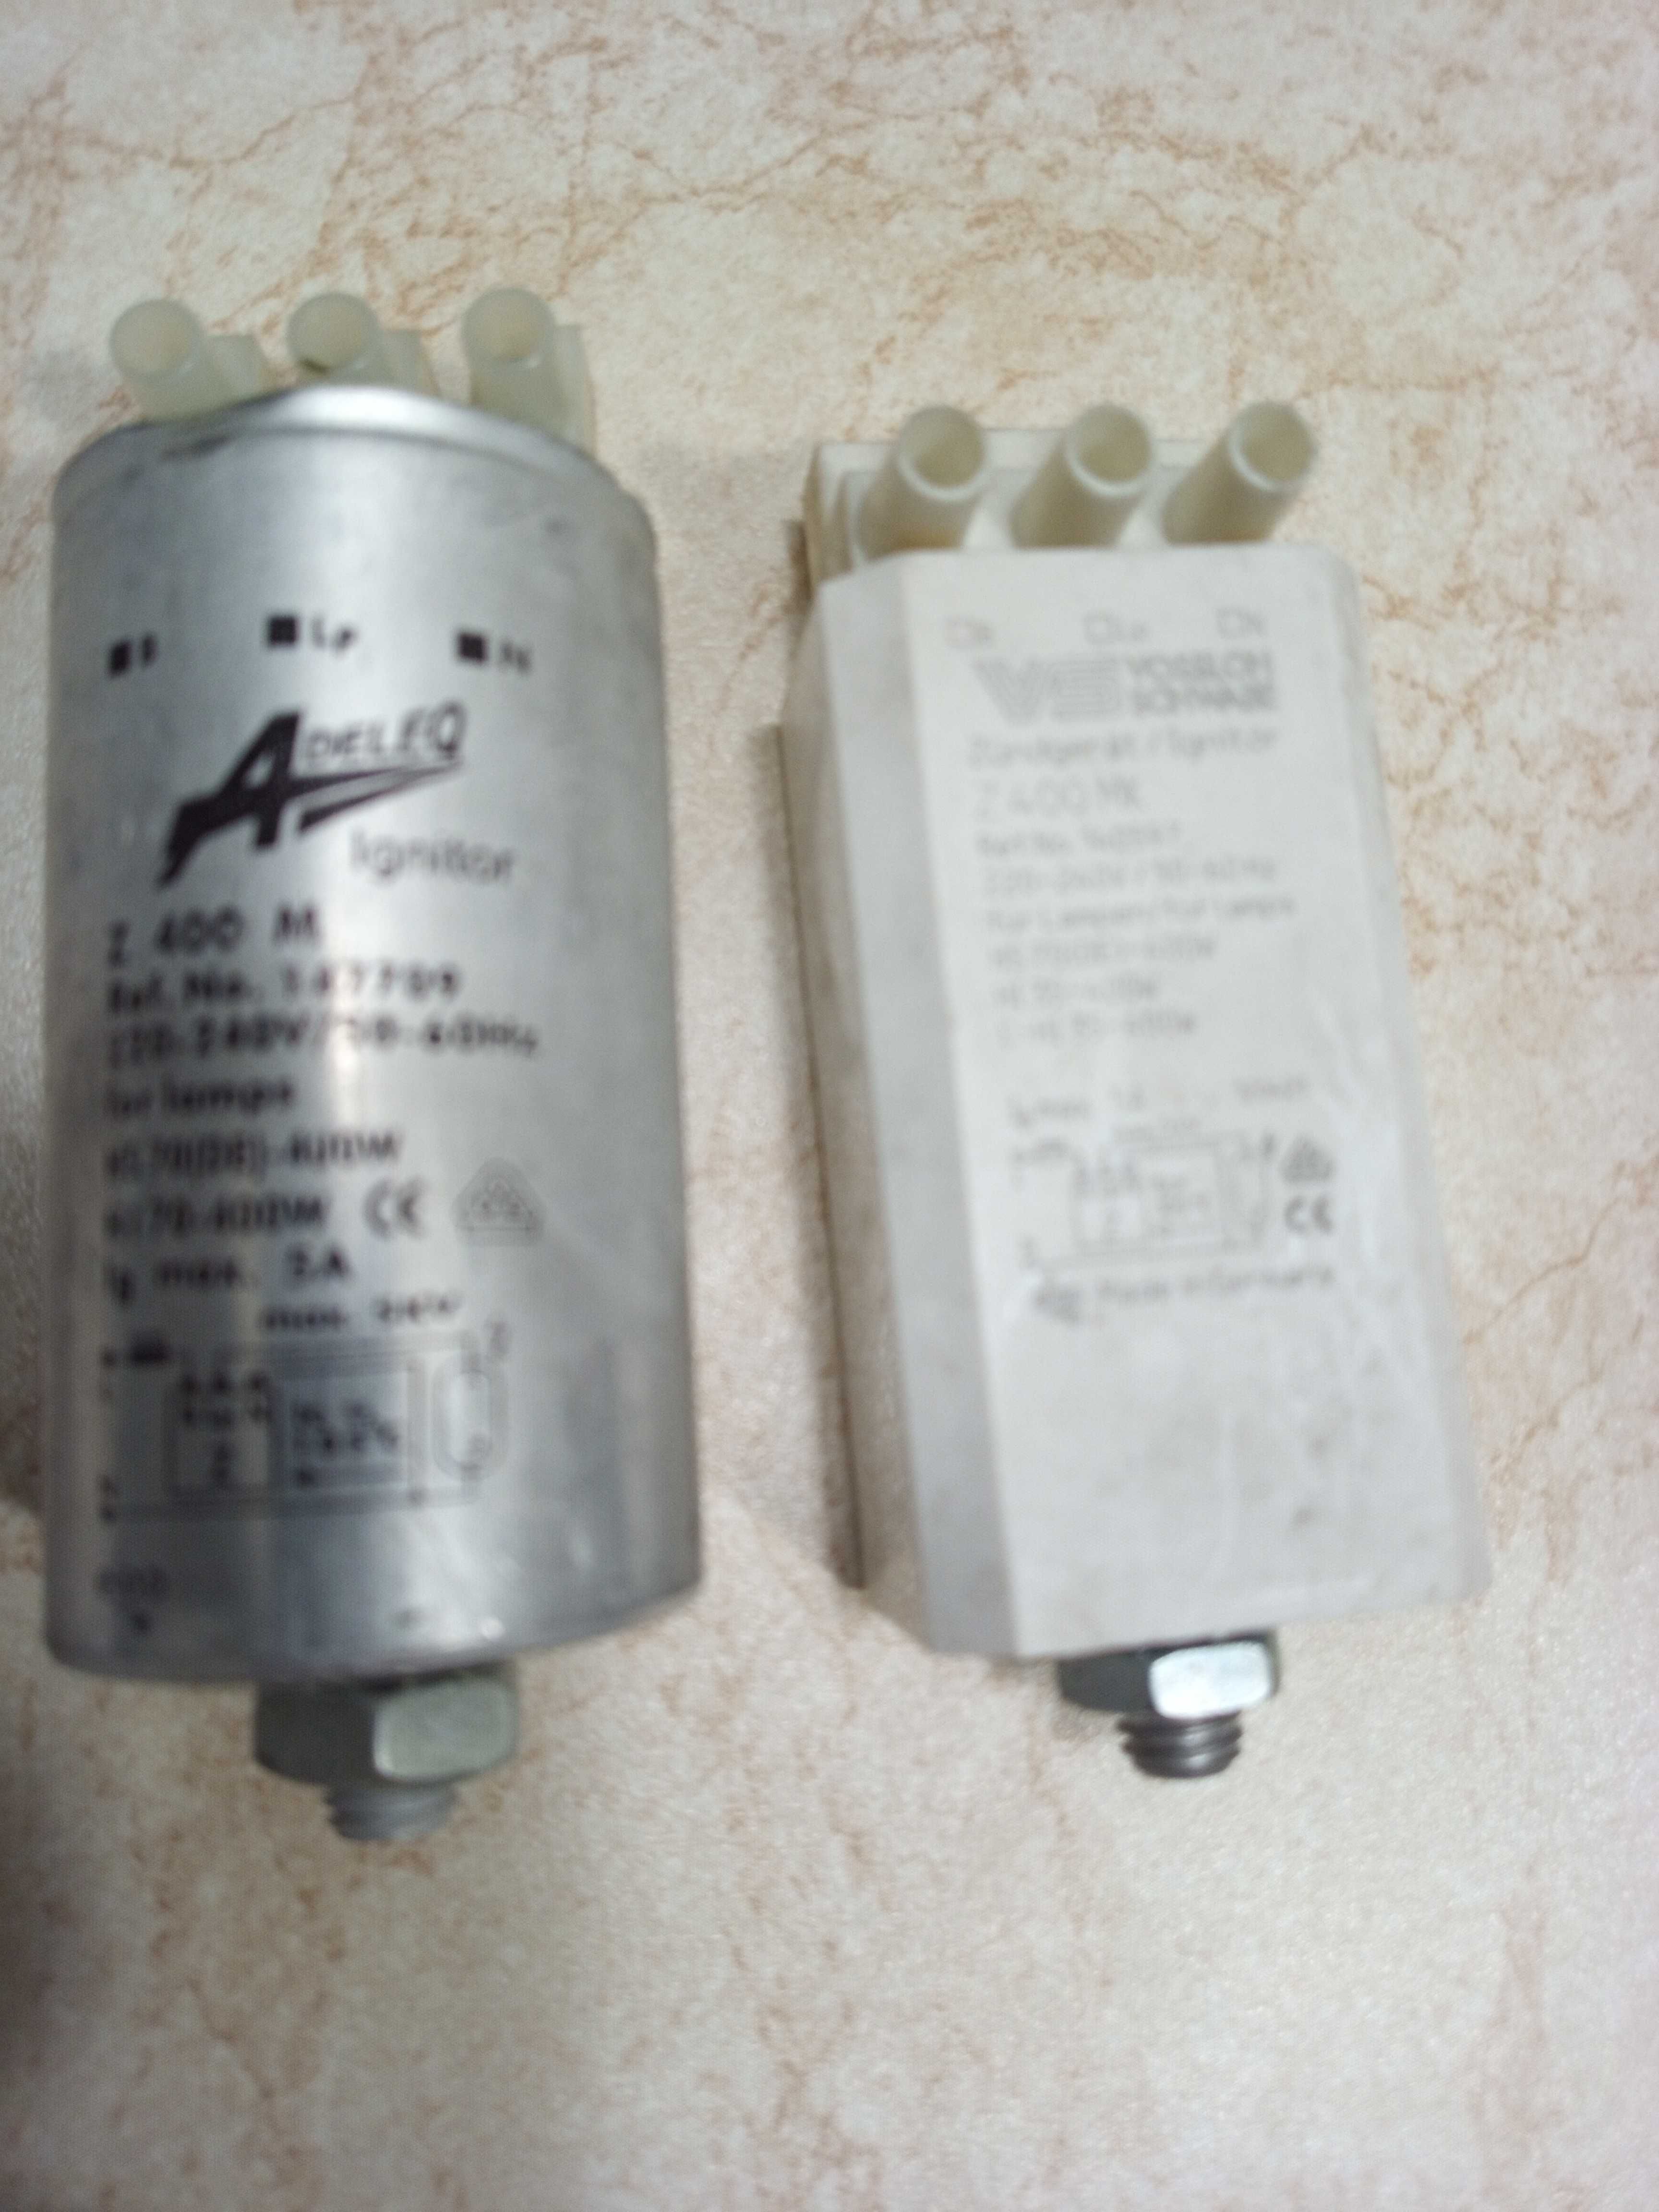 Ignitor-Aprindere electronică  Lampi sodiu Z 400 MK si Z 400 M